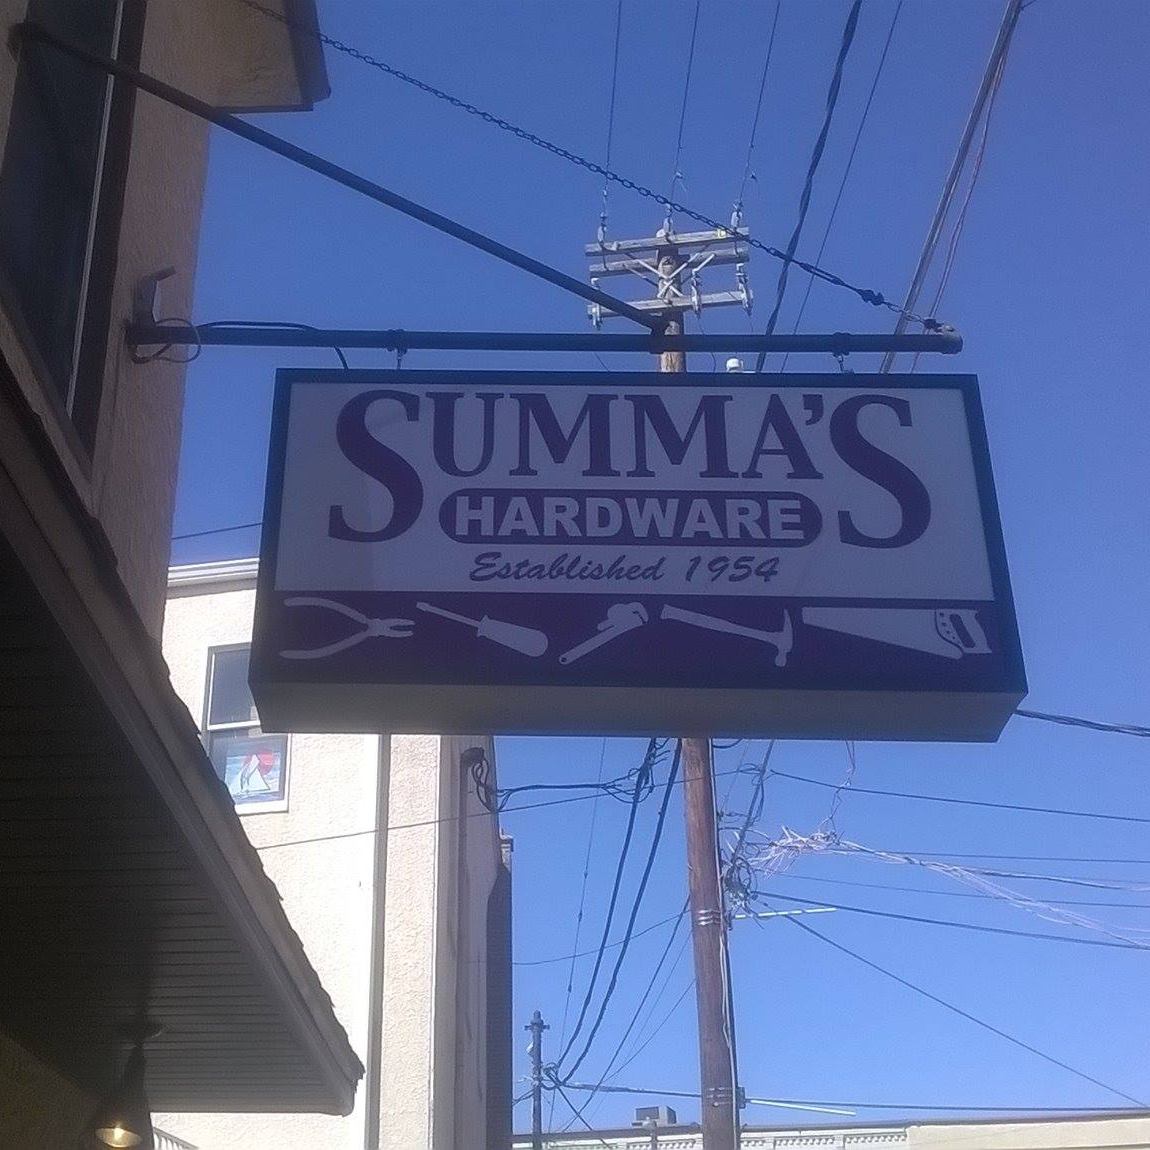 Summa's Hardware